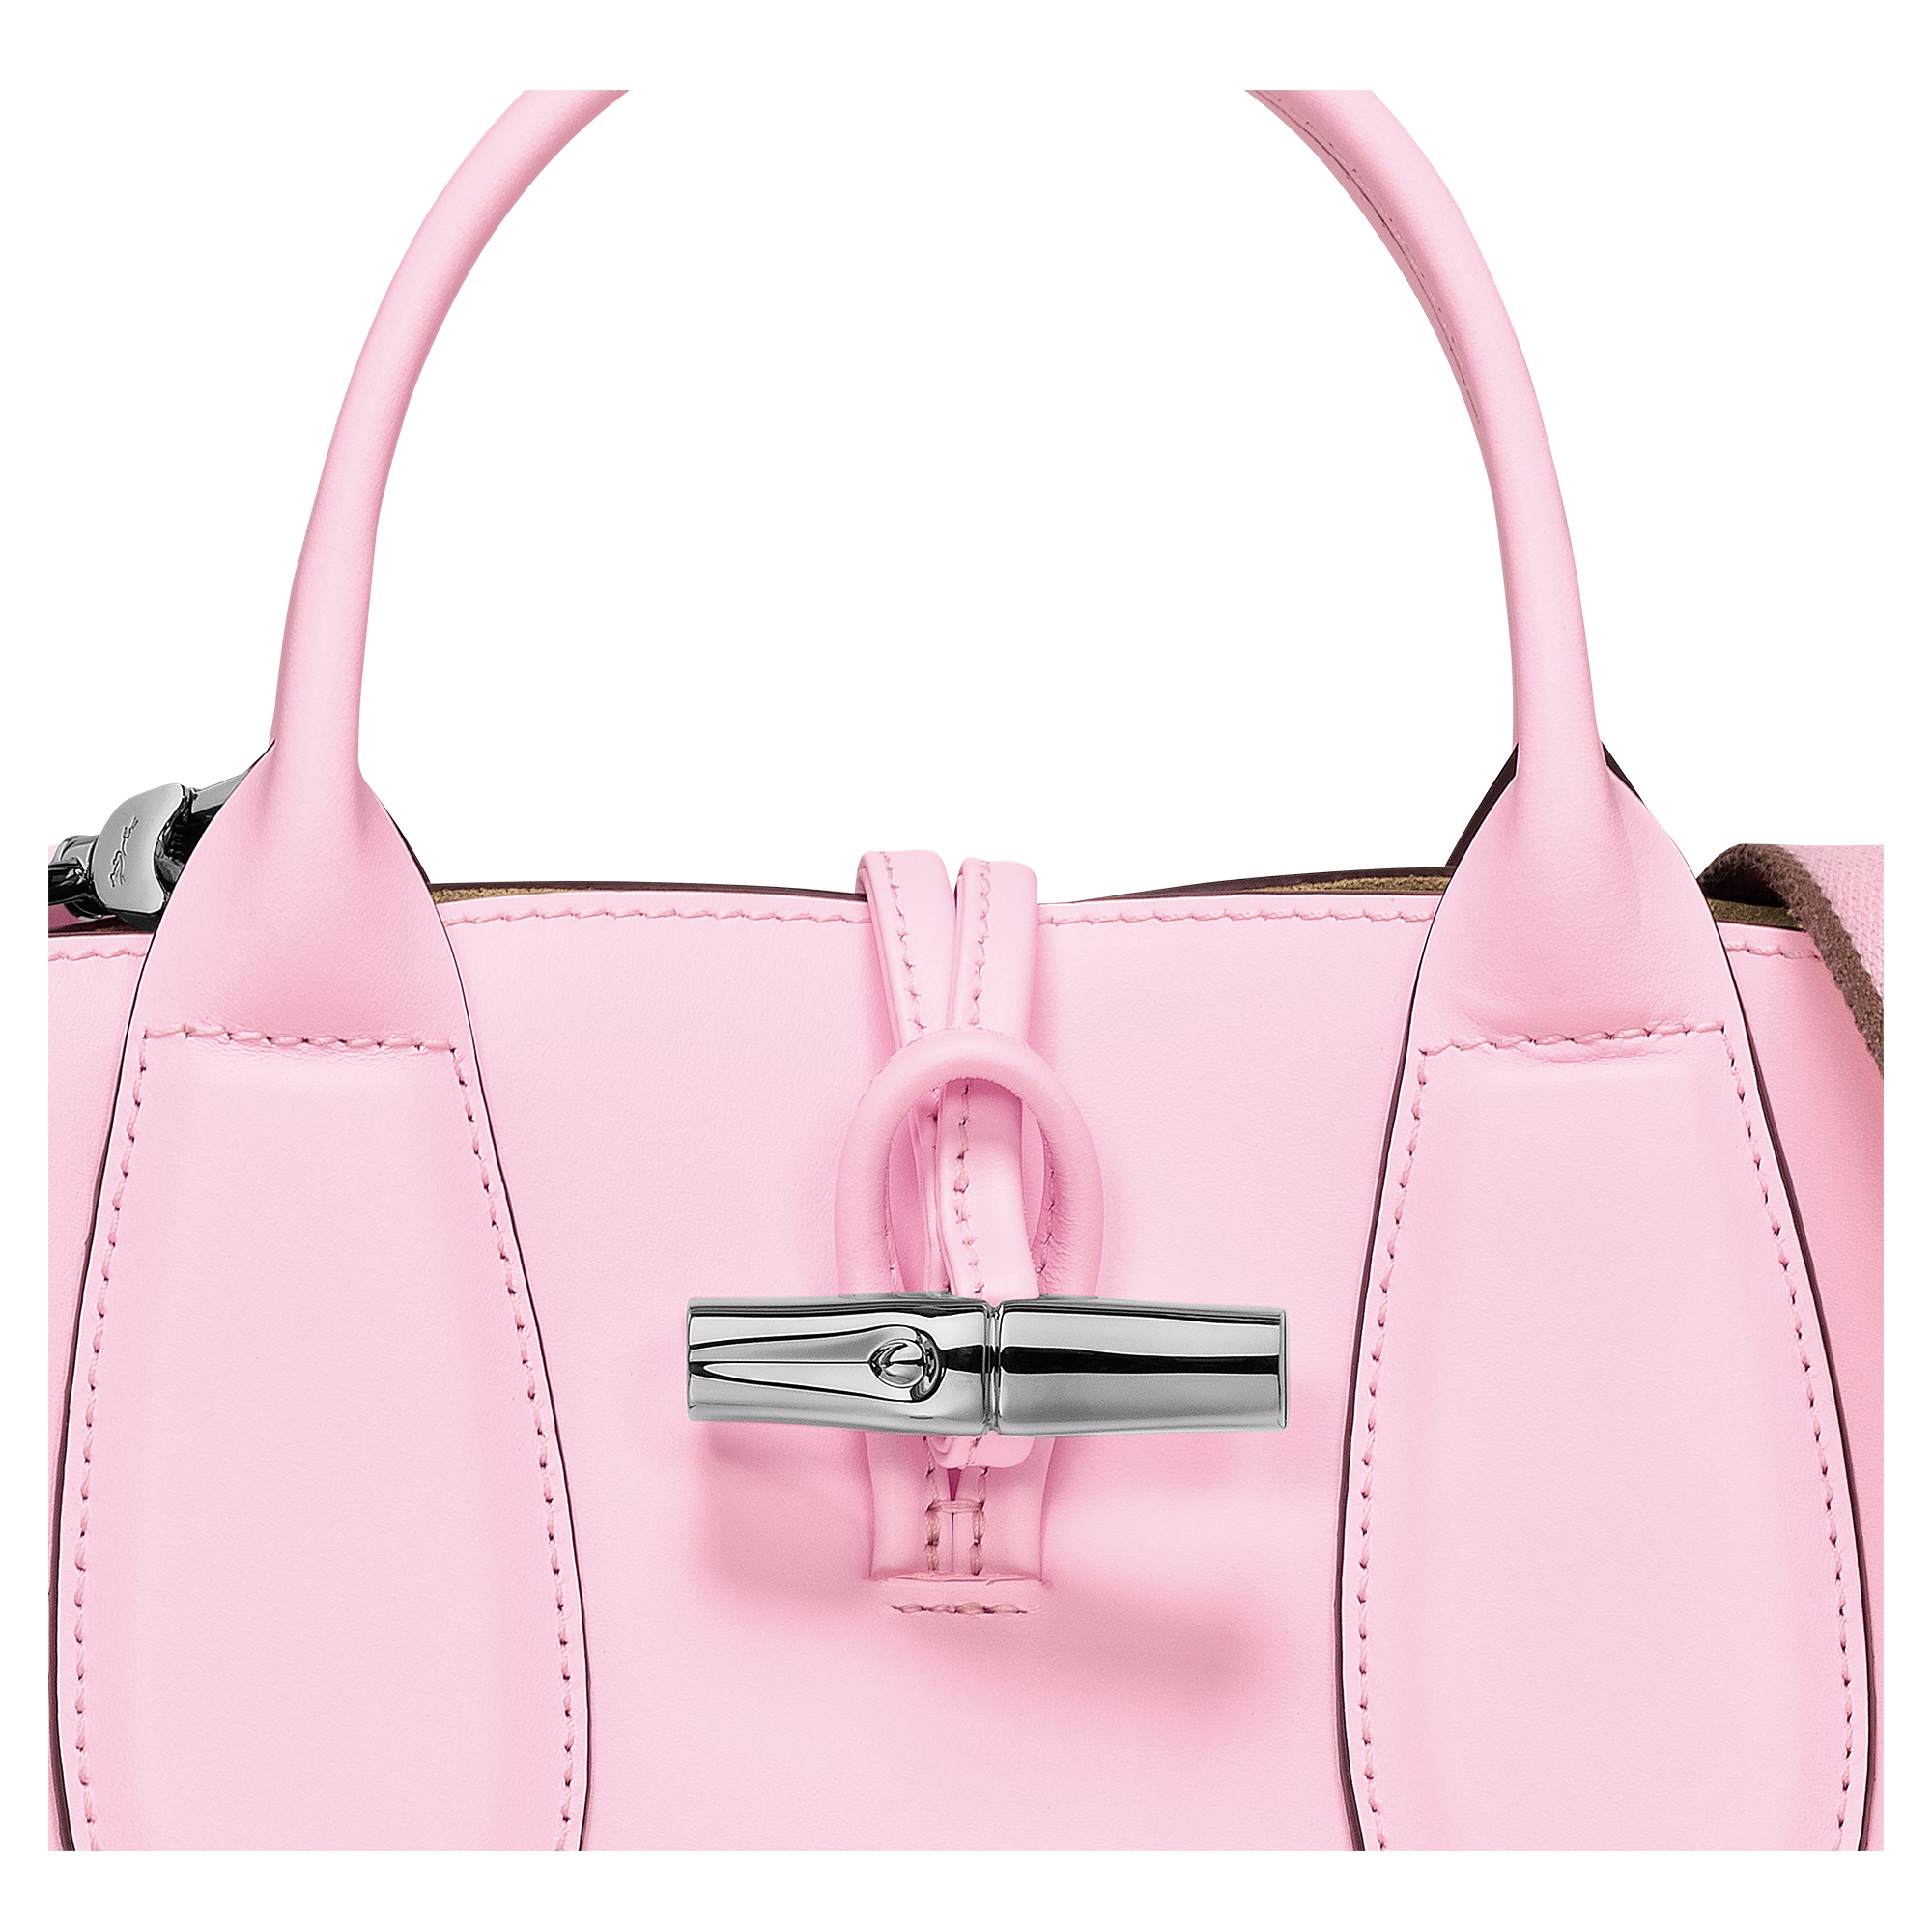 Roseau 手提包 S, 粉紅色